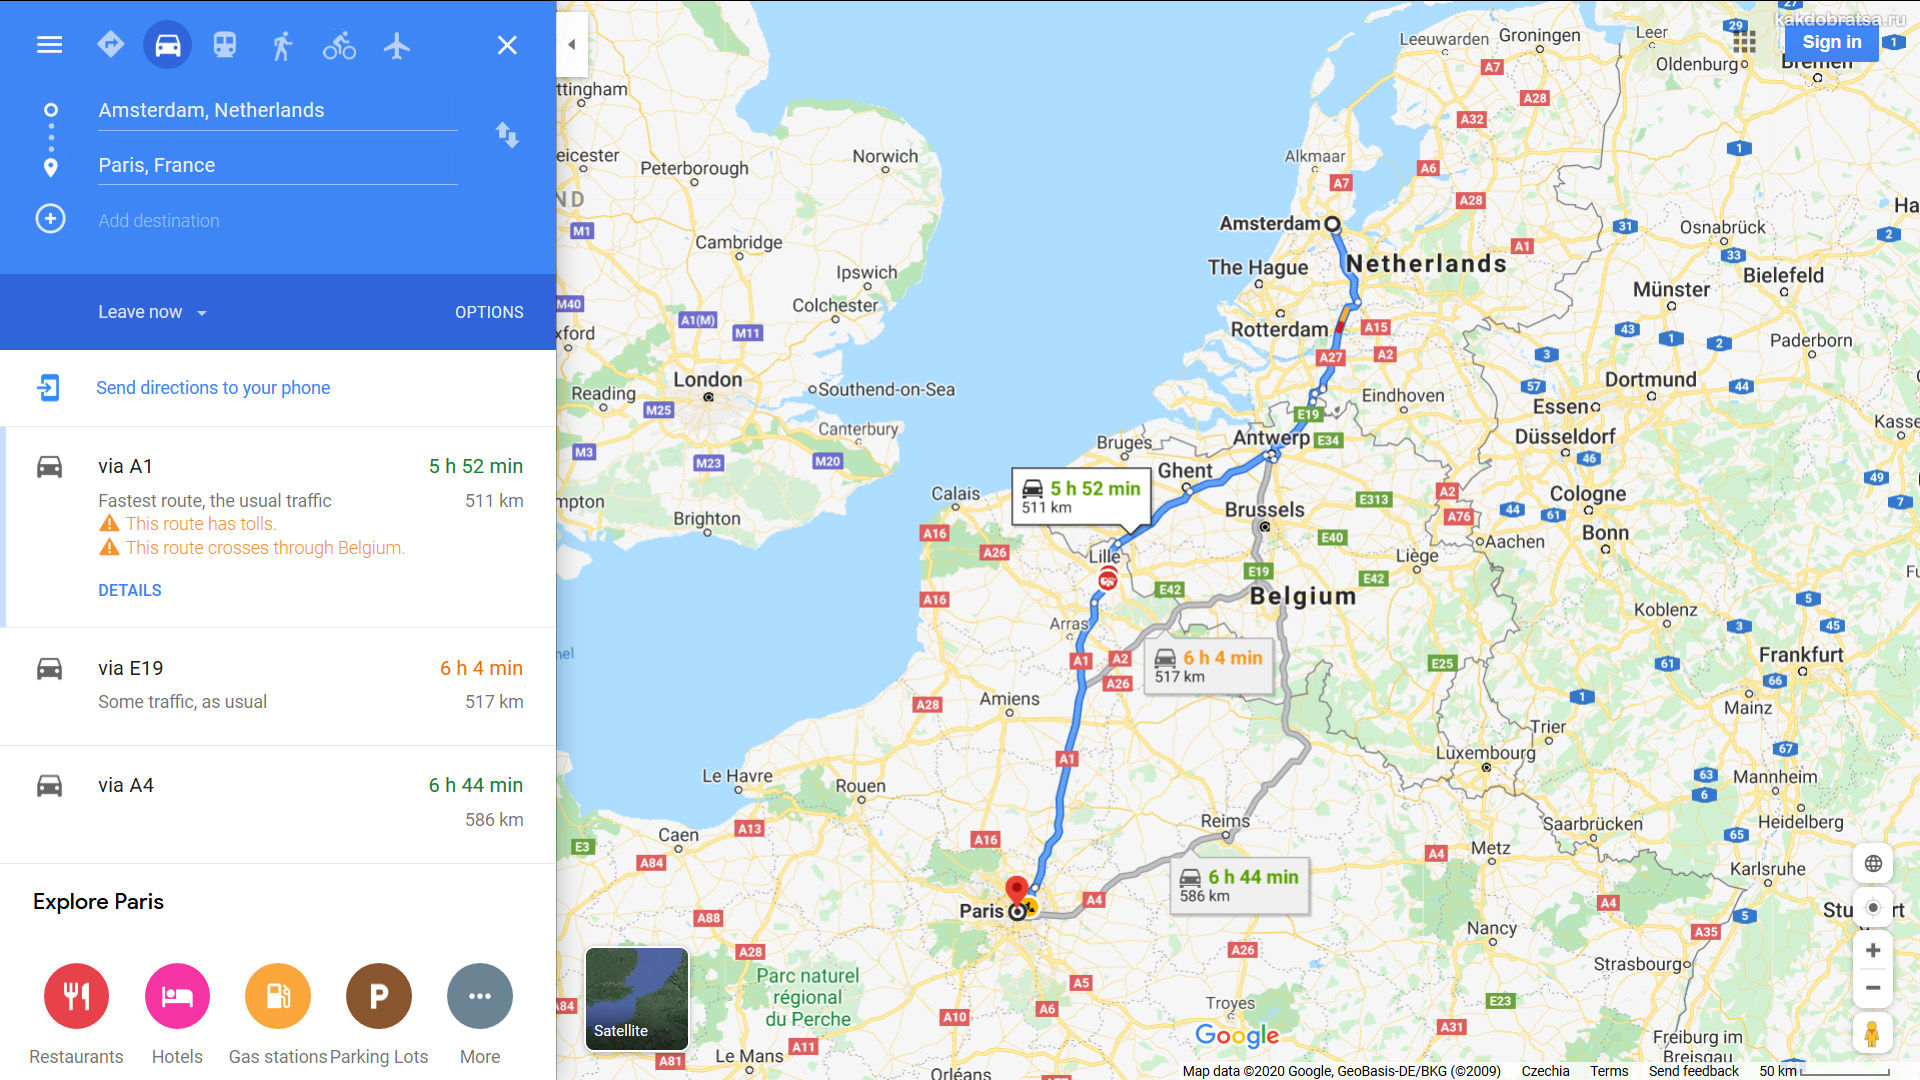 Дюссельдорф+кёльн+амстердам - советы, вопросы и ответы путешественникам на трипстере